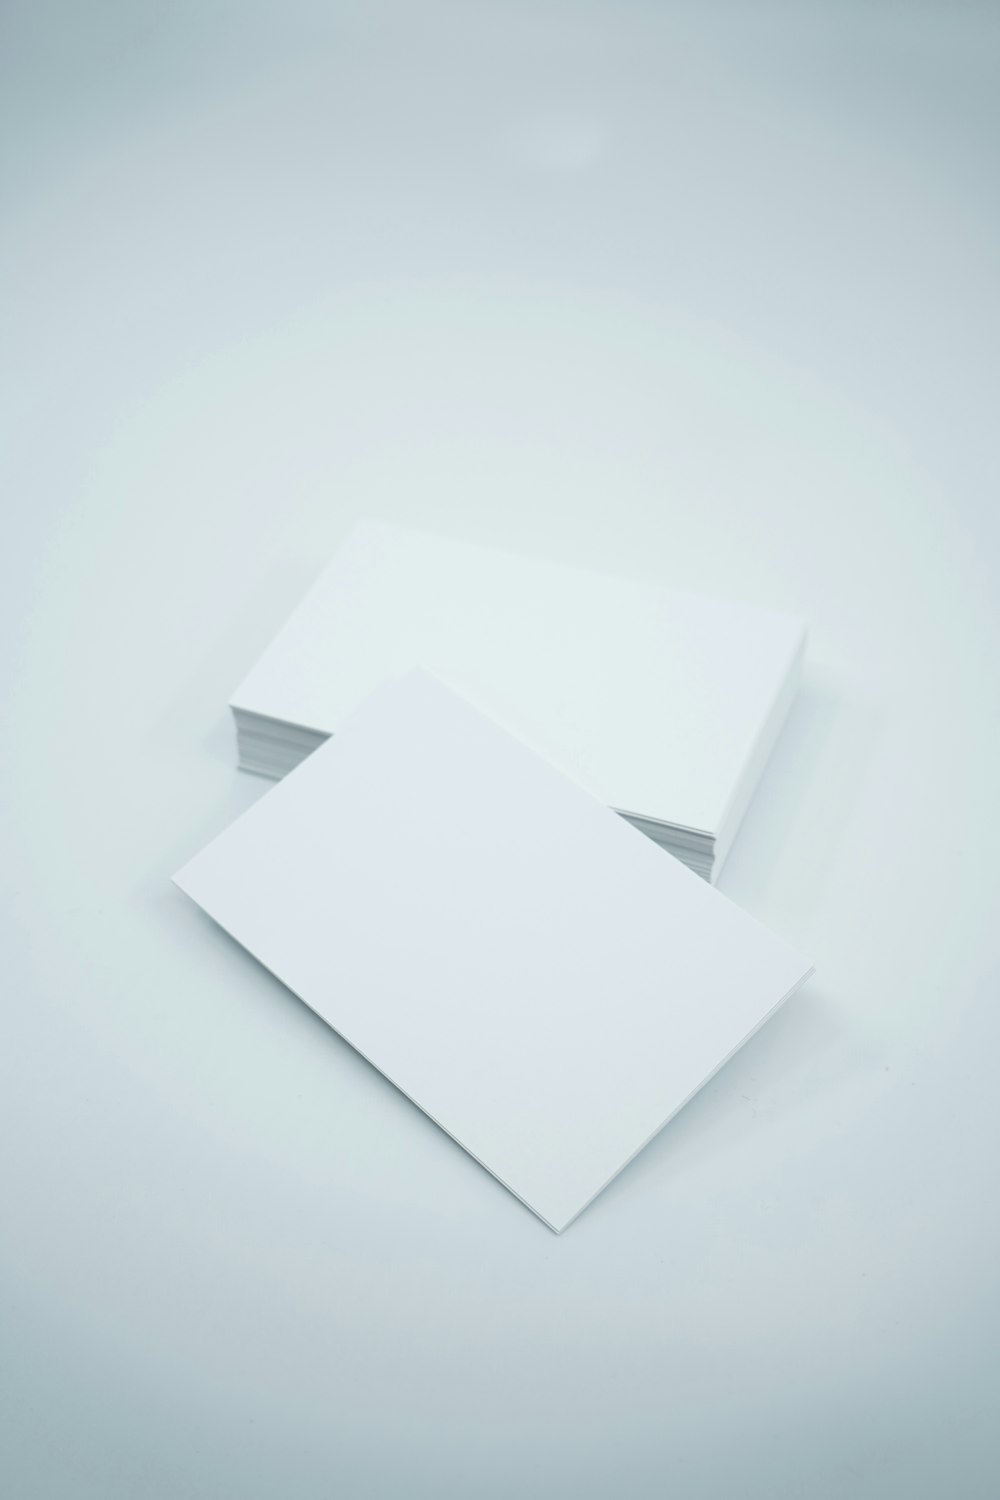 Dos hojas de papel en blanco sobre fondo blanco